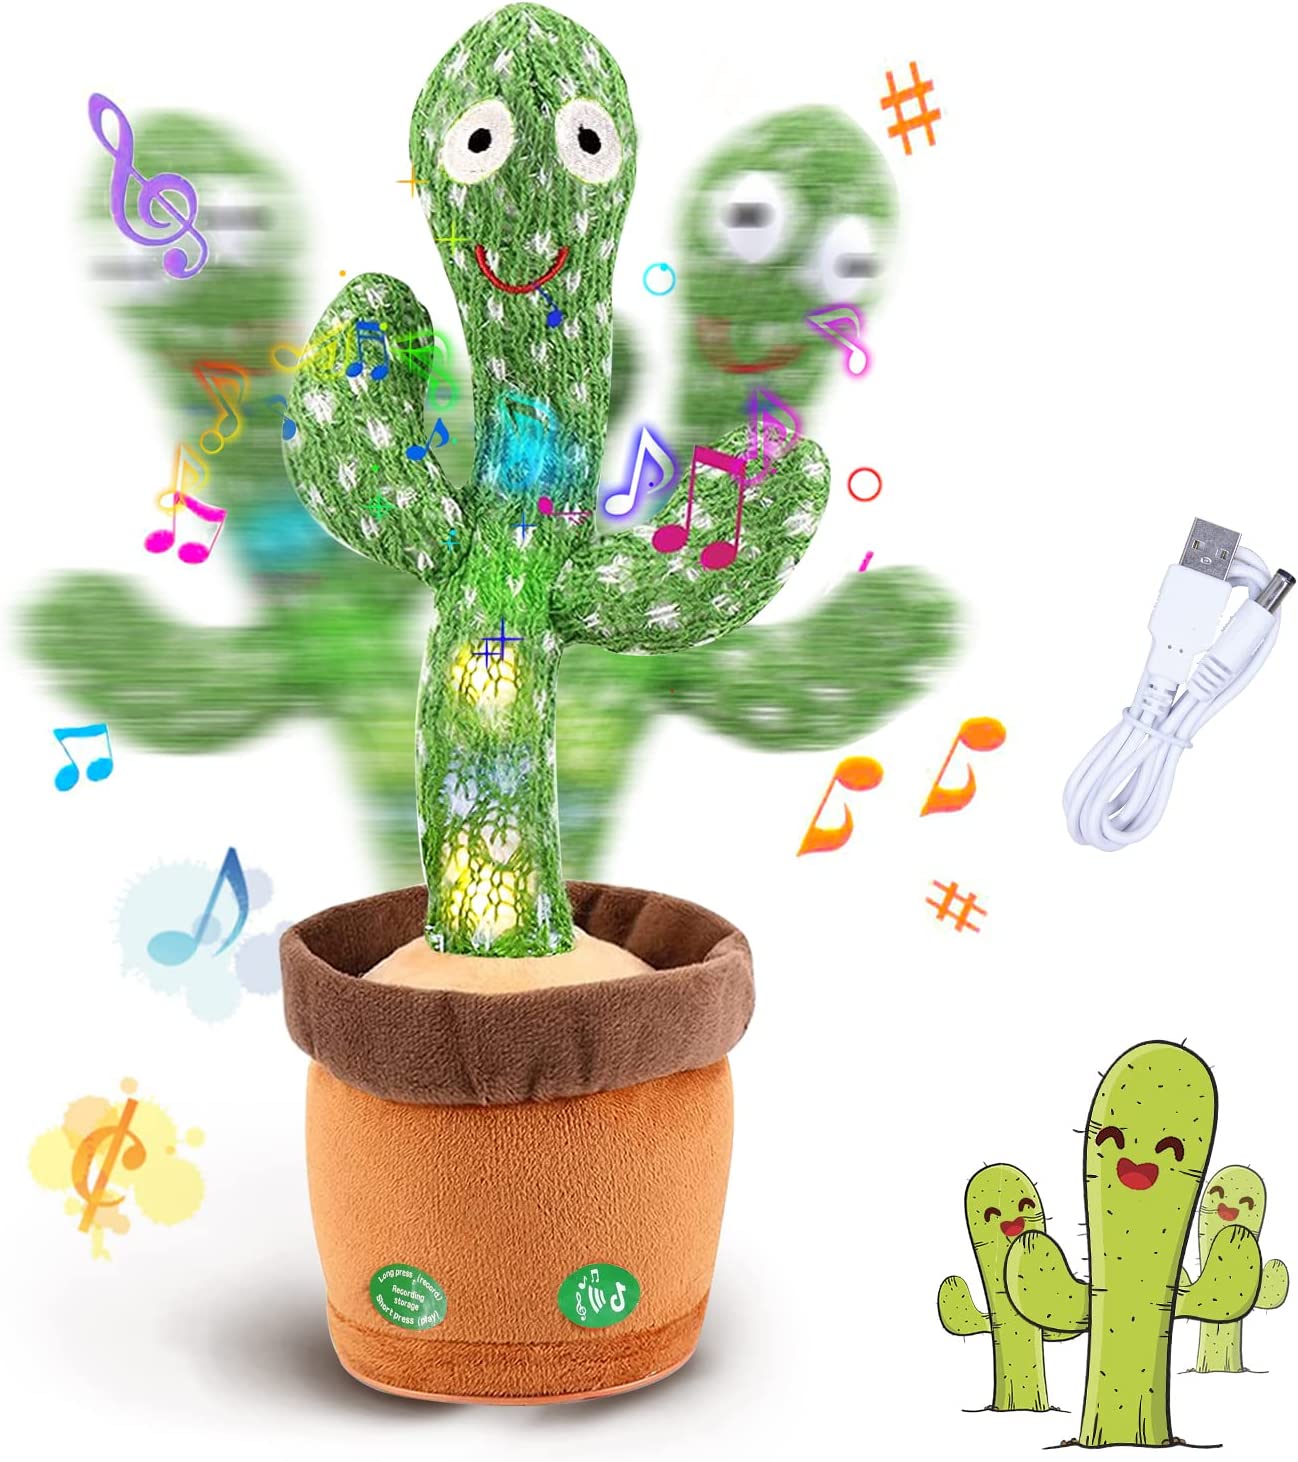 Tanzender Kaktus, mit Lichtern und Musik